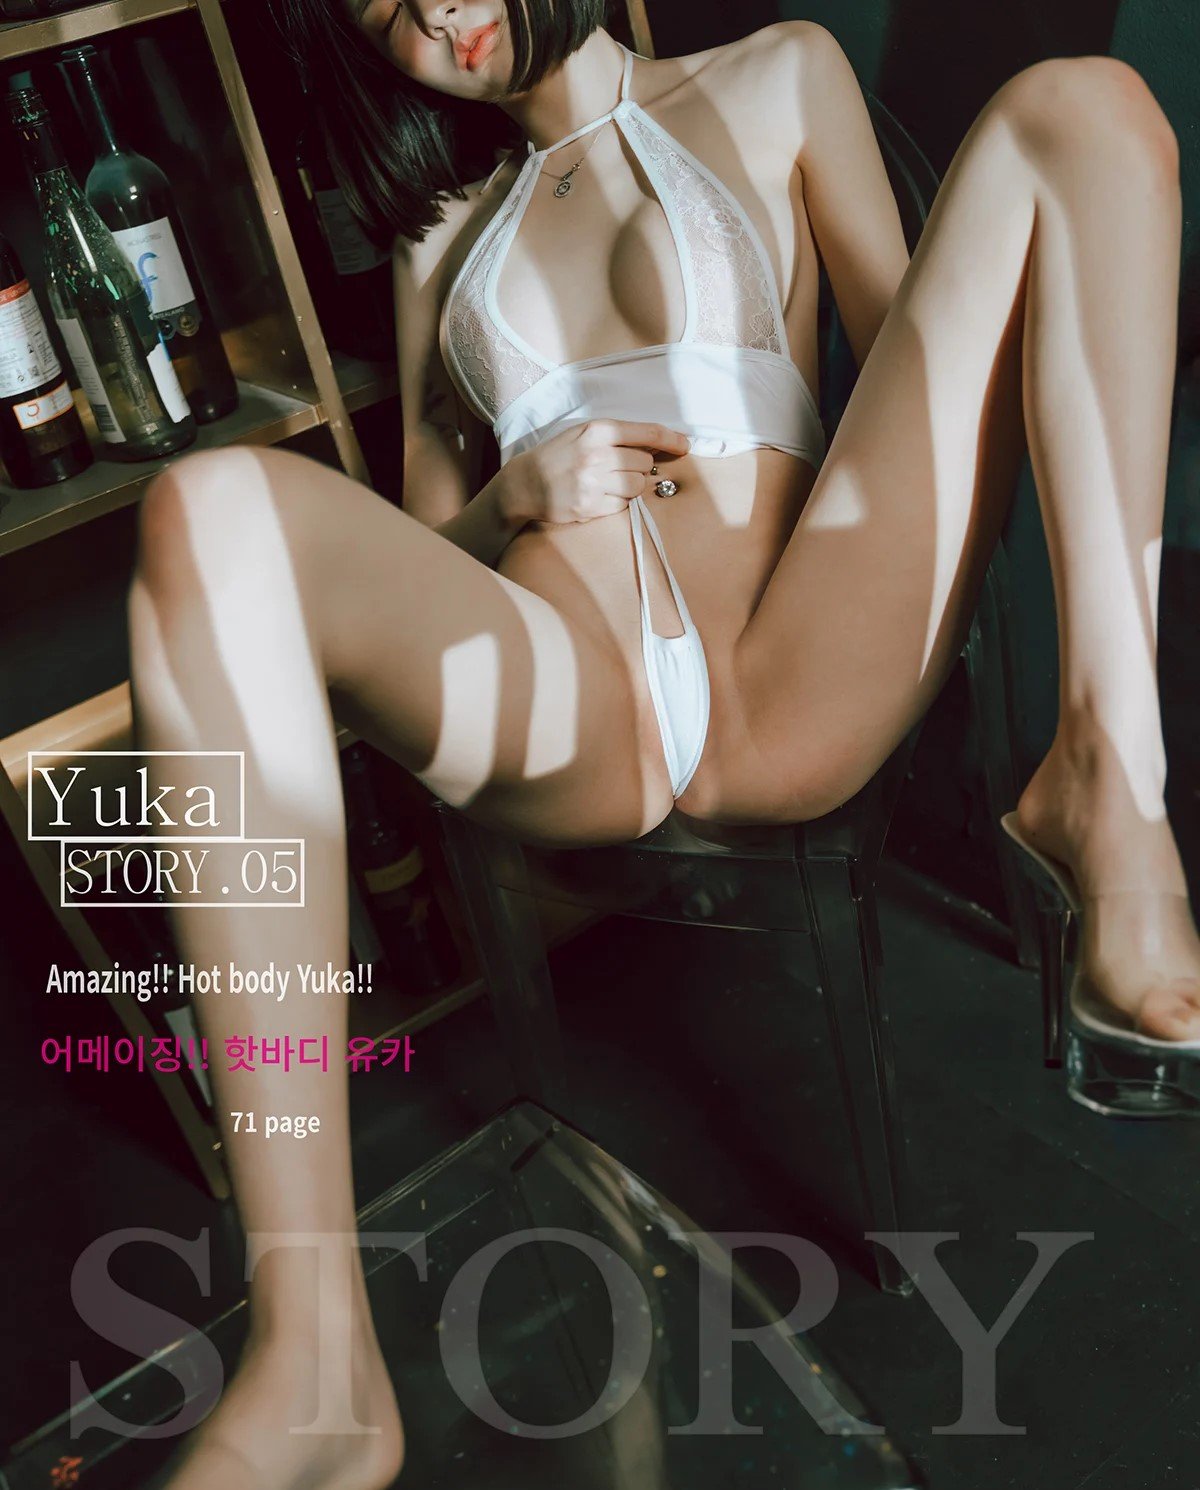 [Bimilstory] Yuka Vol.05 - Amazing Hot Body Yuka